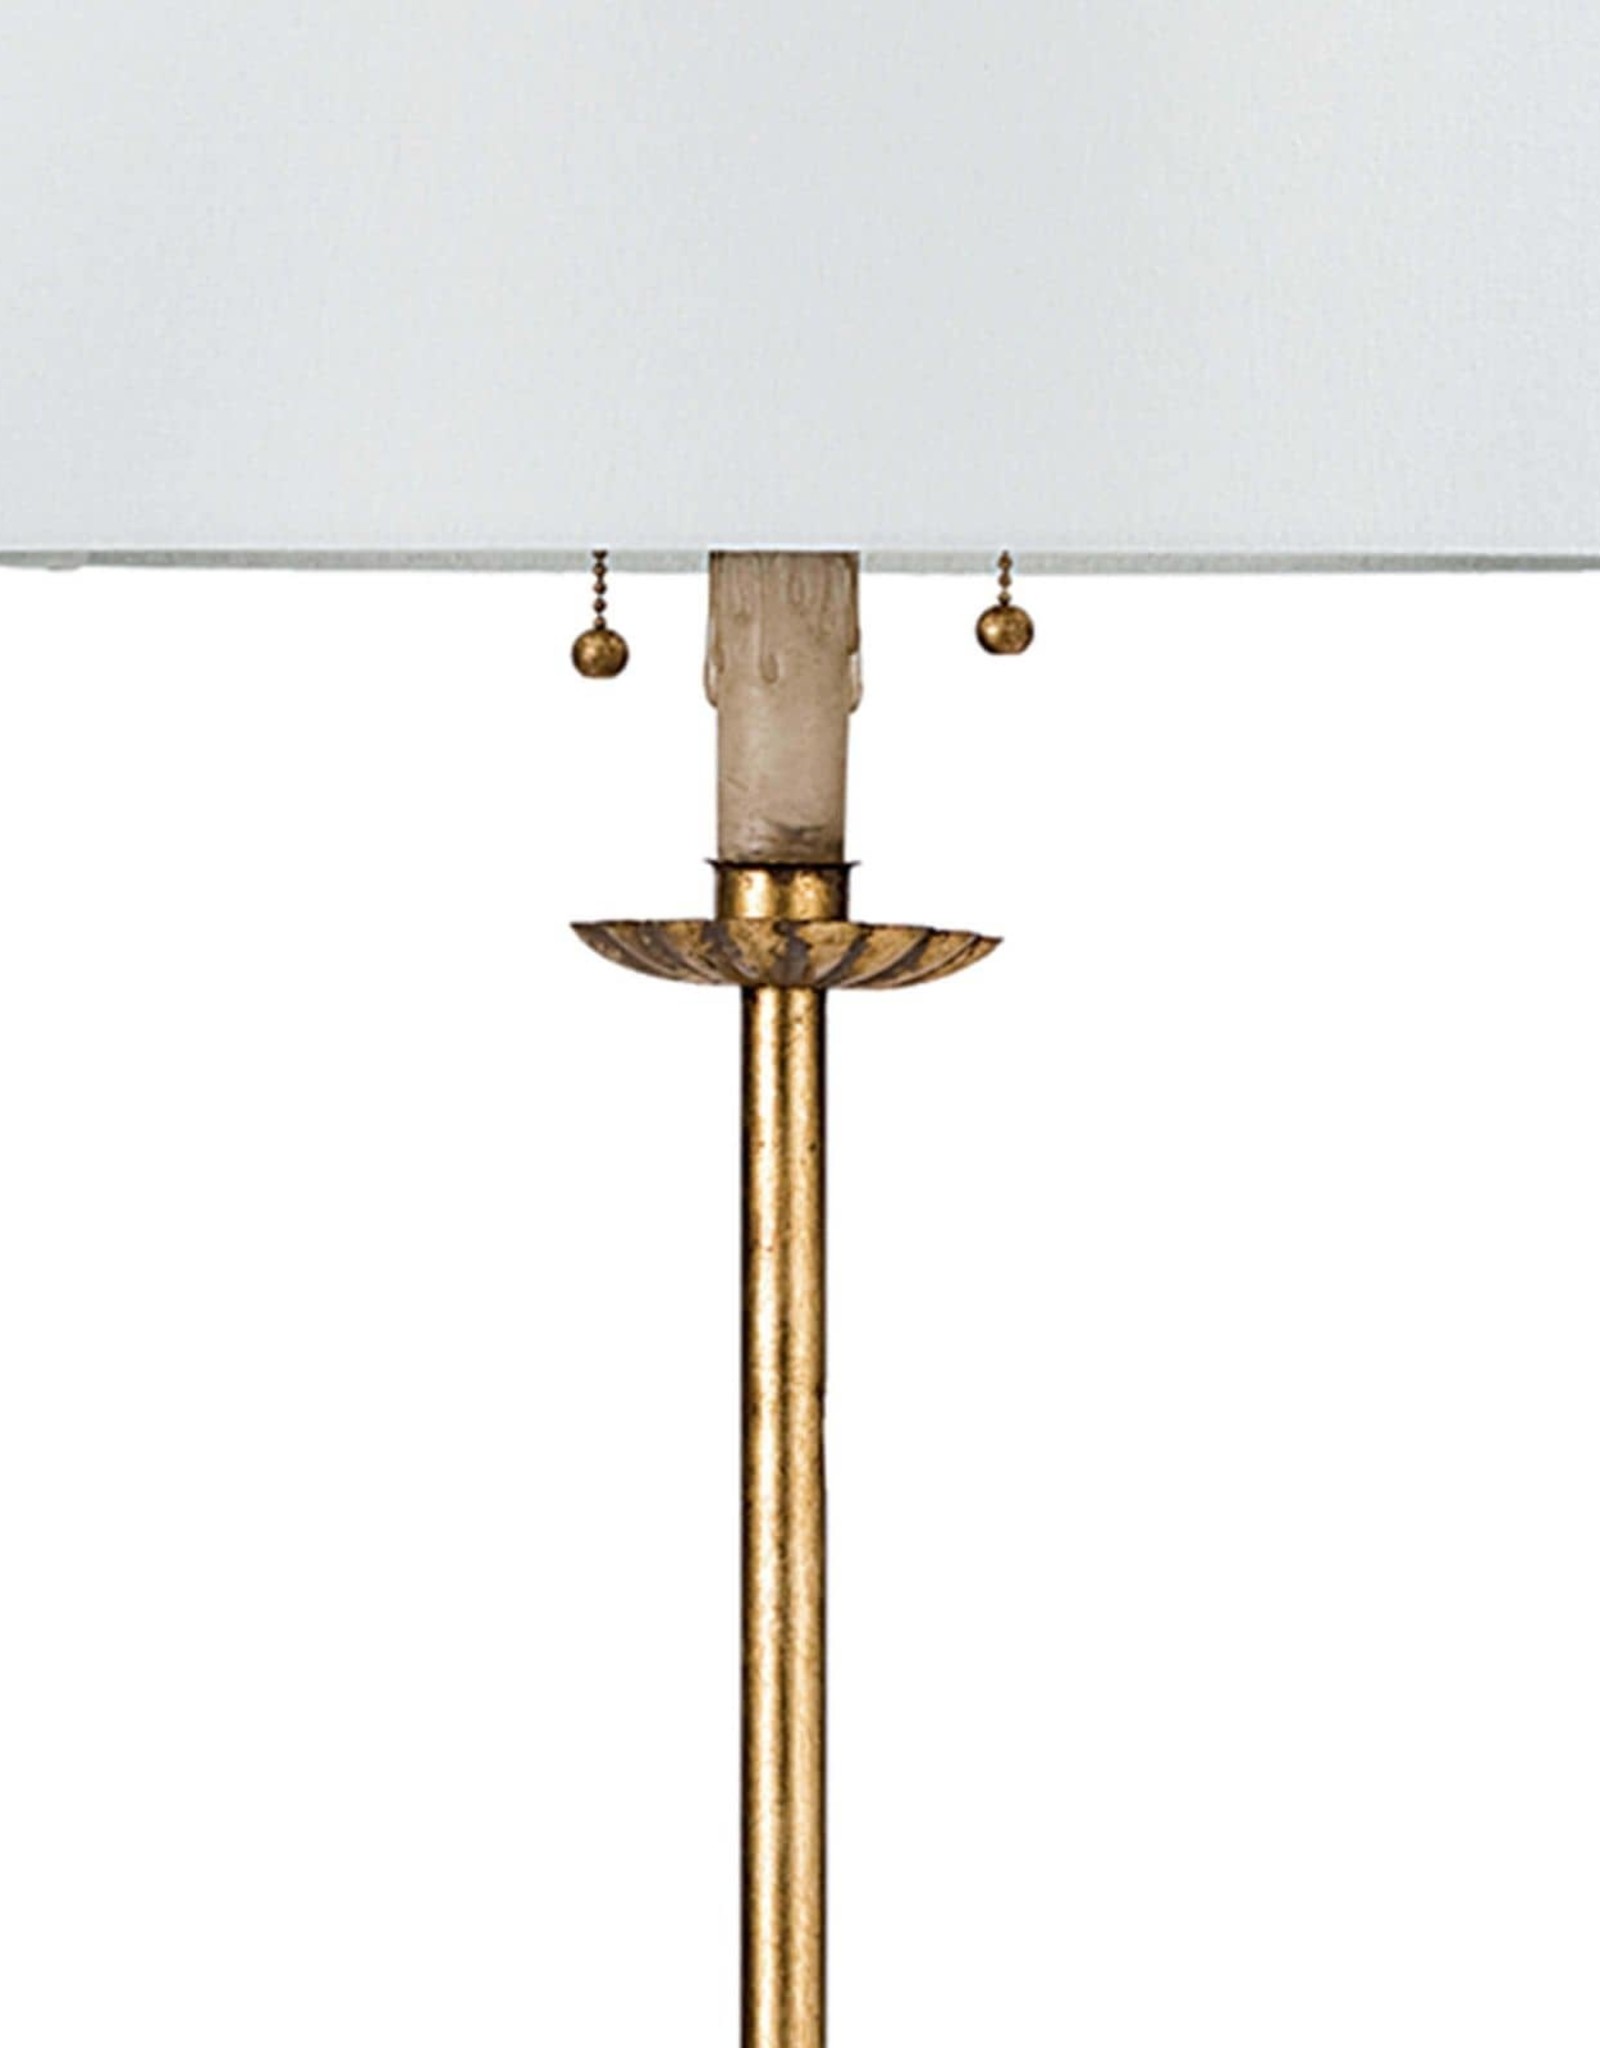 Regina Andrew Design Clove Stem Floor Lamp (Antique Gold Leaf)